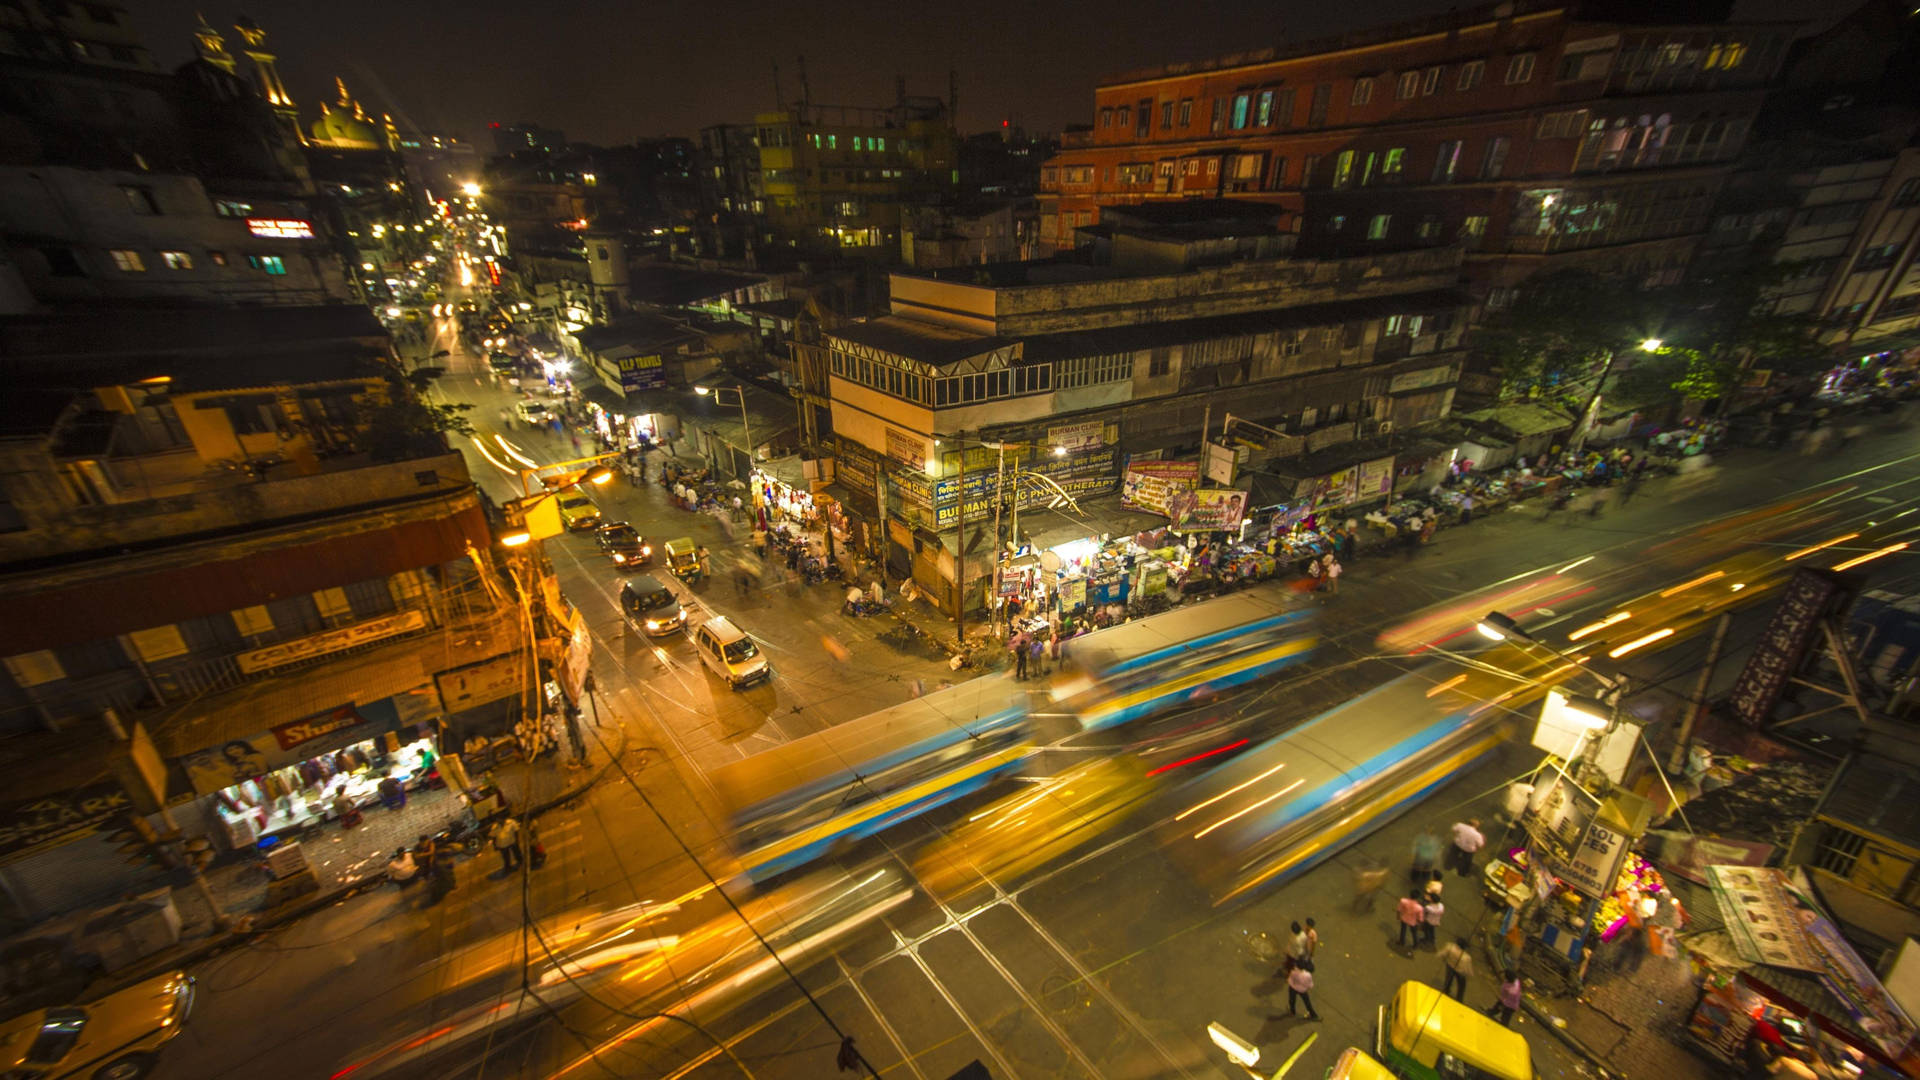 Kolkata Photos, Download The BEST Free Kolkata Stock Photos & HD Images